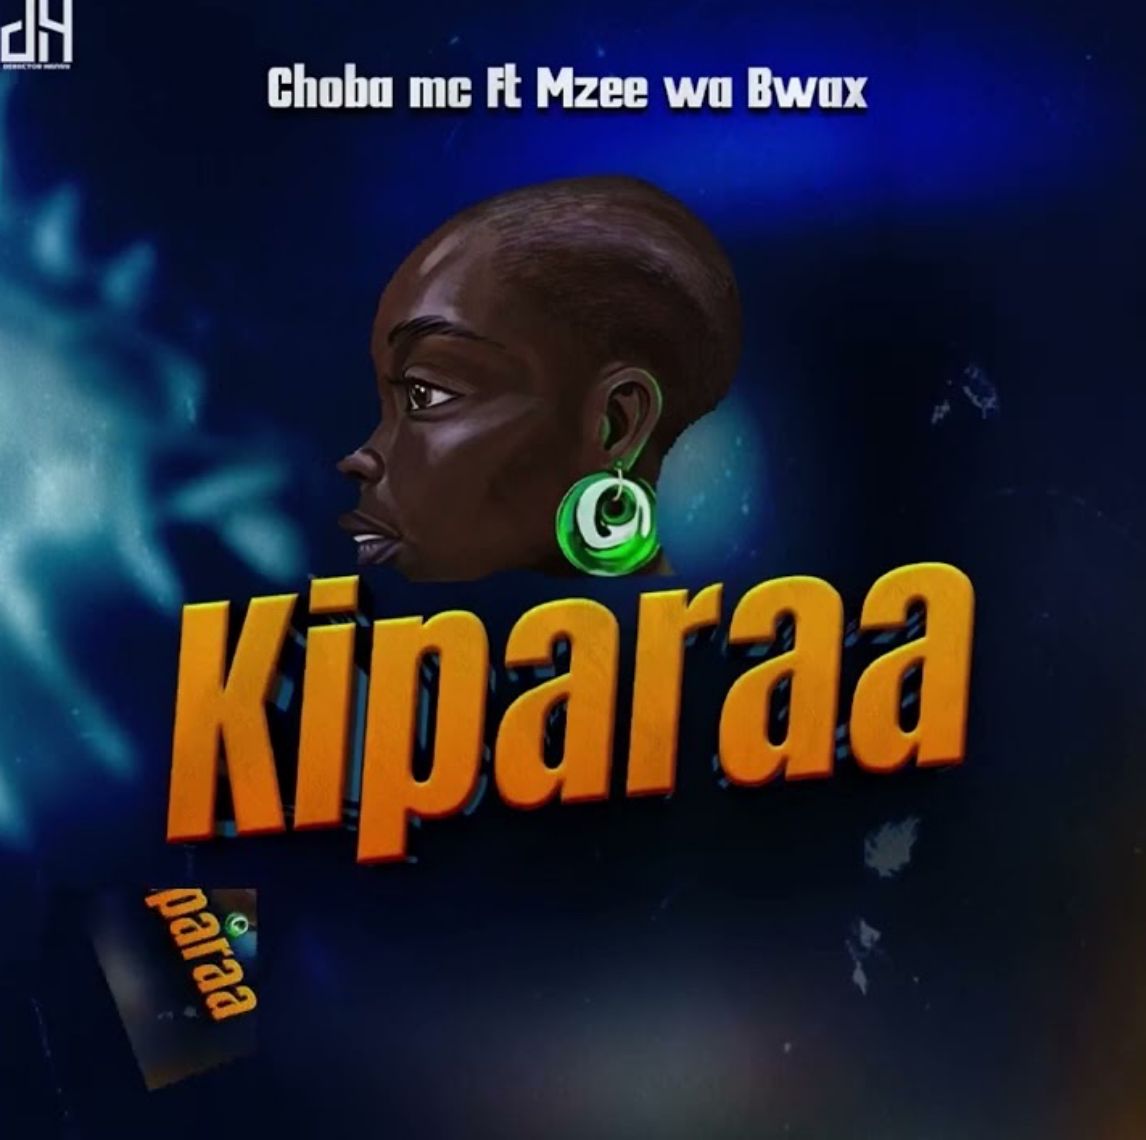  Choba Mc Ft. Mzee wa Bwax – Kiparaa